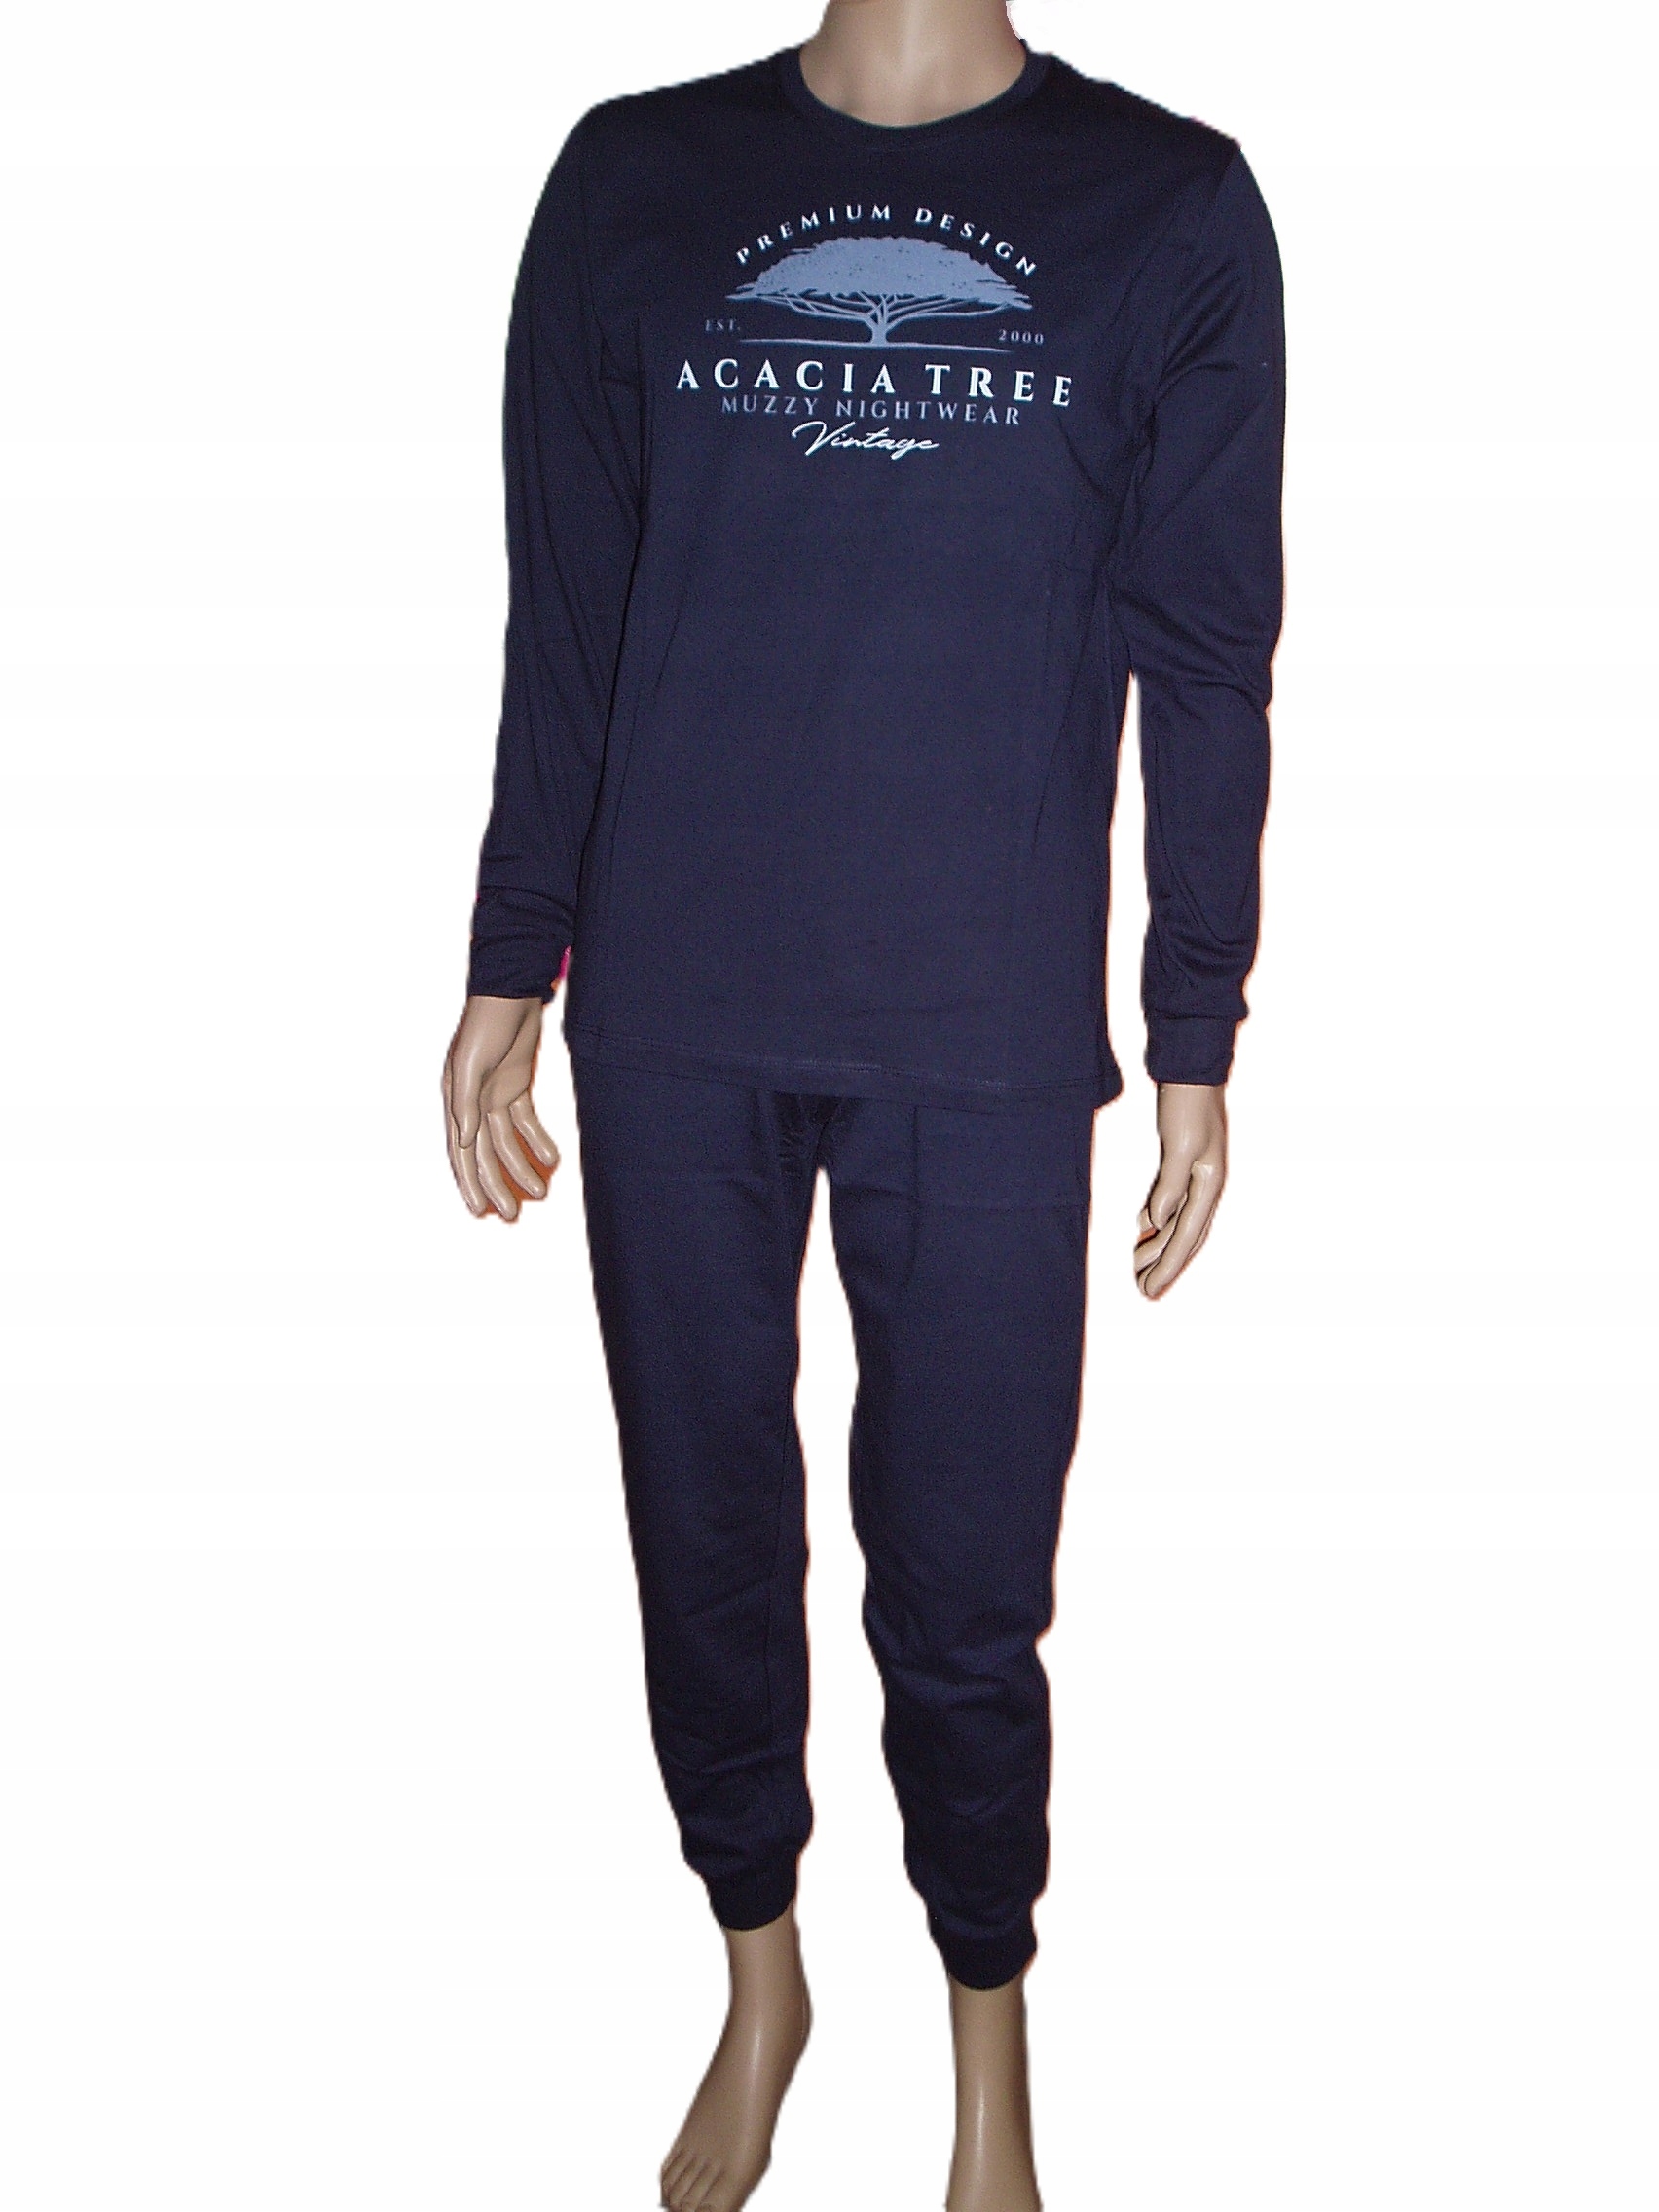 Pánske pyžamo Muzzy Nightwear Acaciatree bavlna granát L